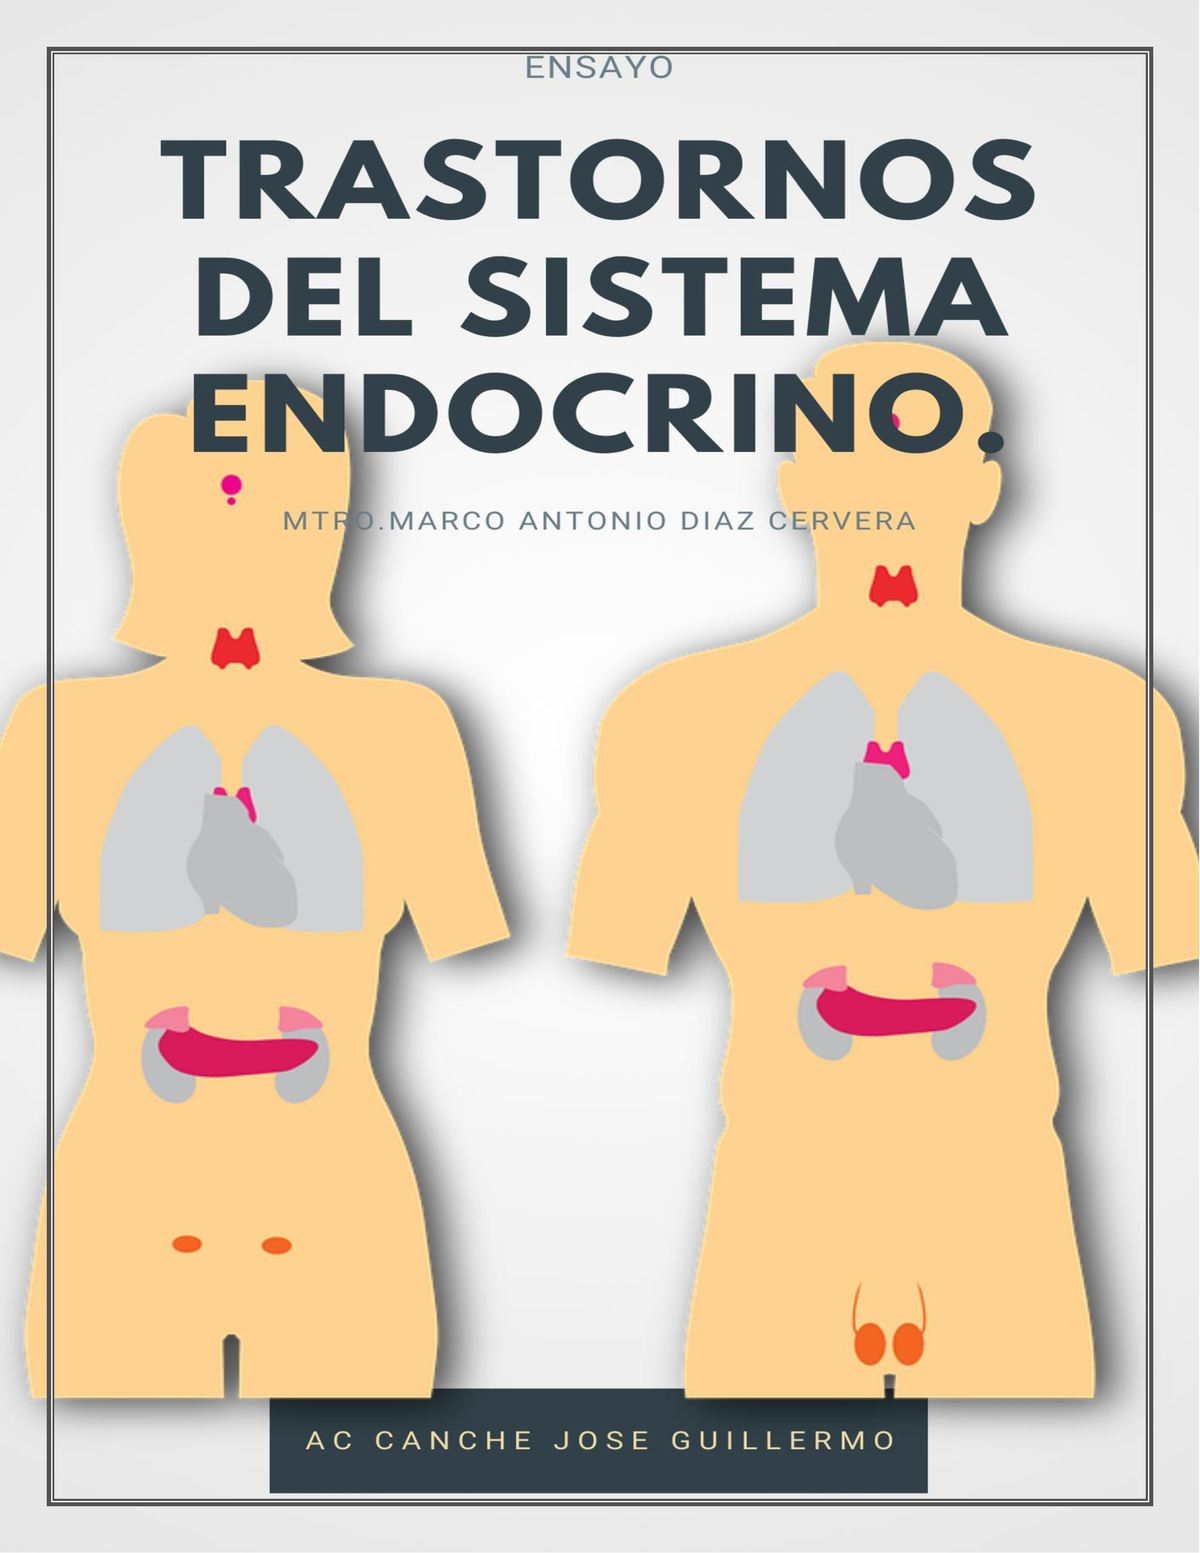 Trastornos del sistema endocrino Ac Canche Jose Guillermo Introducción El marco